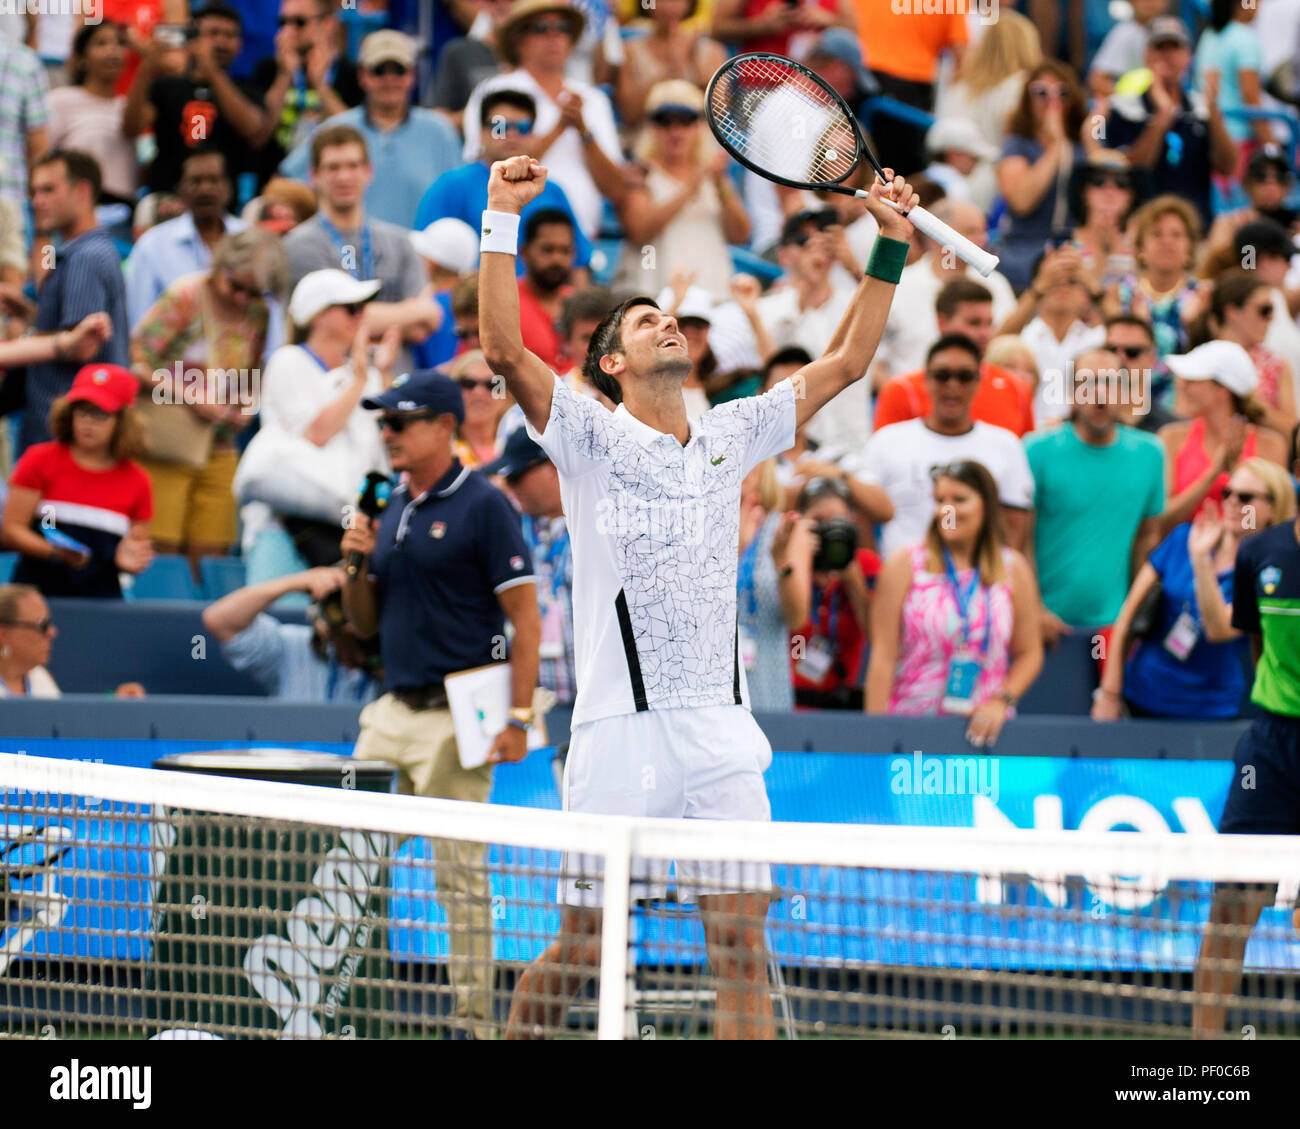 Ohio, USA. 18. August 2018. Novak Djokovic (SRB) feiert seinen Sieg über Marin Cilic (CRO) der westlichen Süden öffnen, Mason, Ohio, USA. Brent Clark/Alamy leben Nachrichten Stockfoto